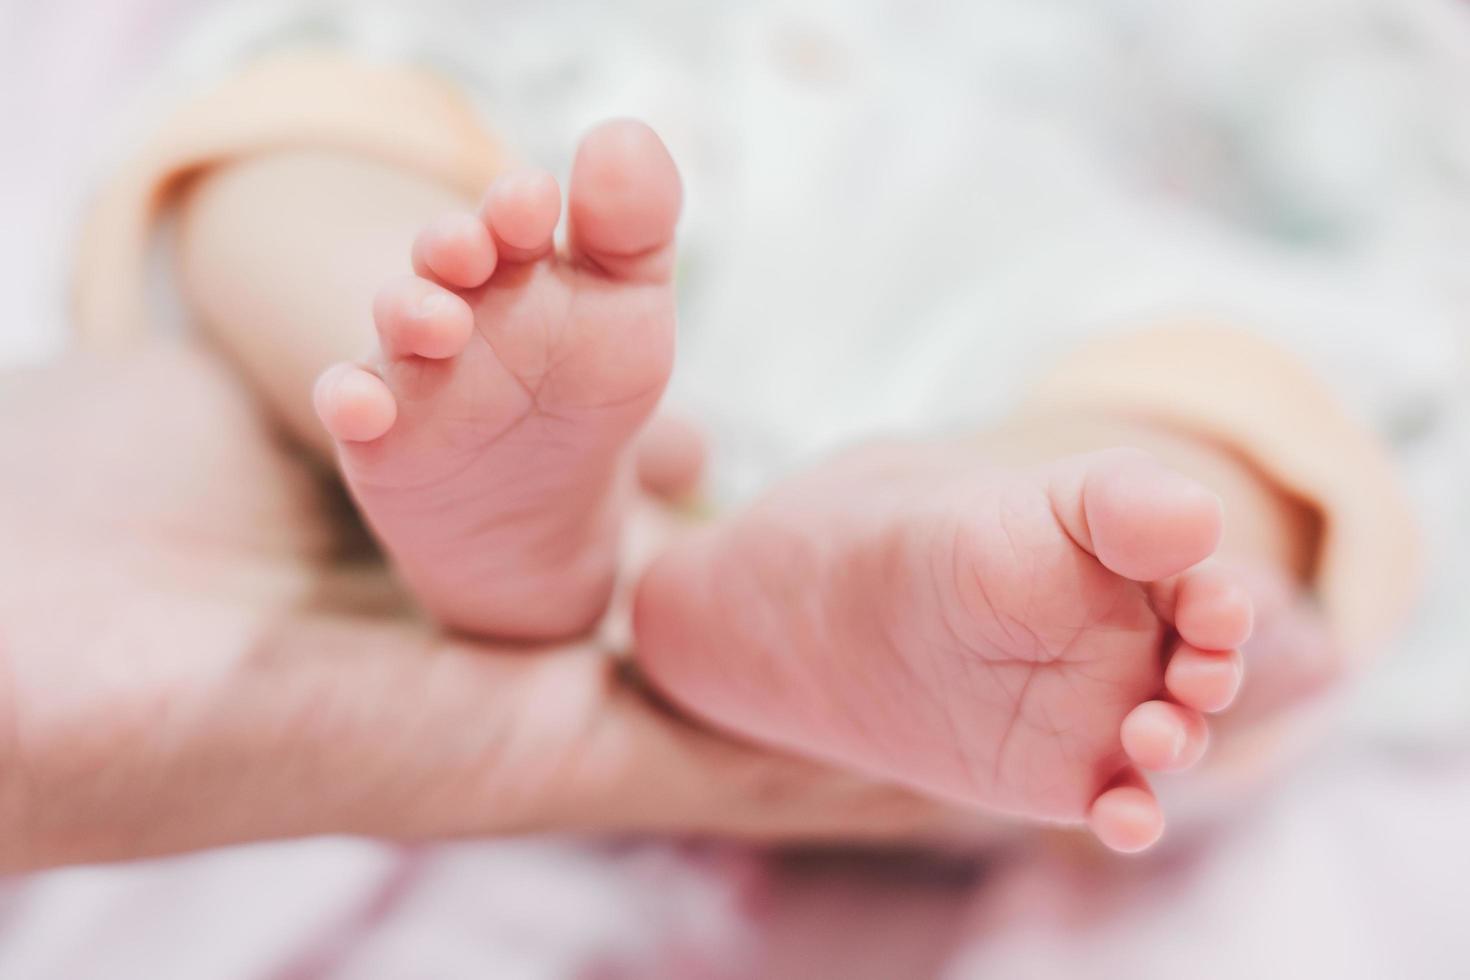 pieds de bébé dans les mains de la mère photo